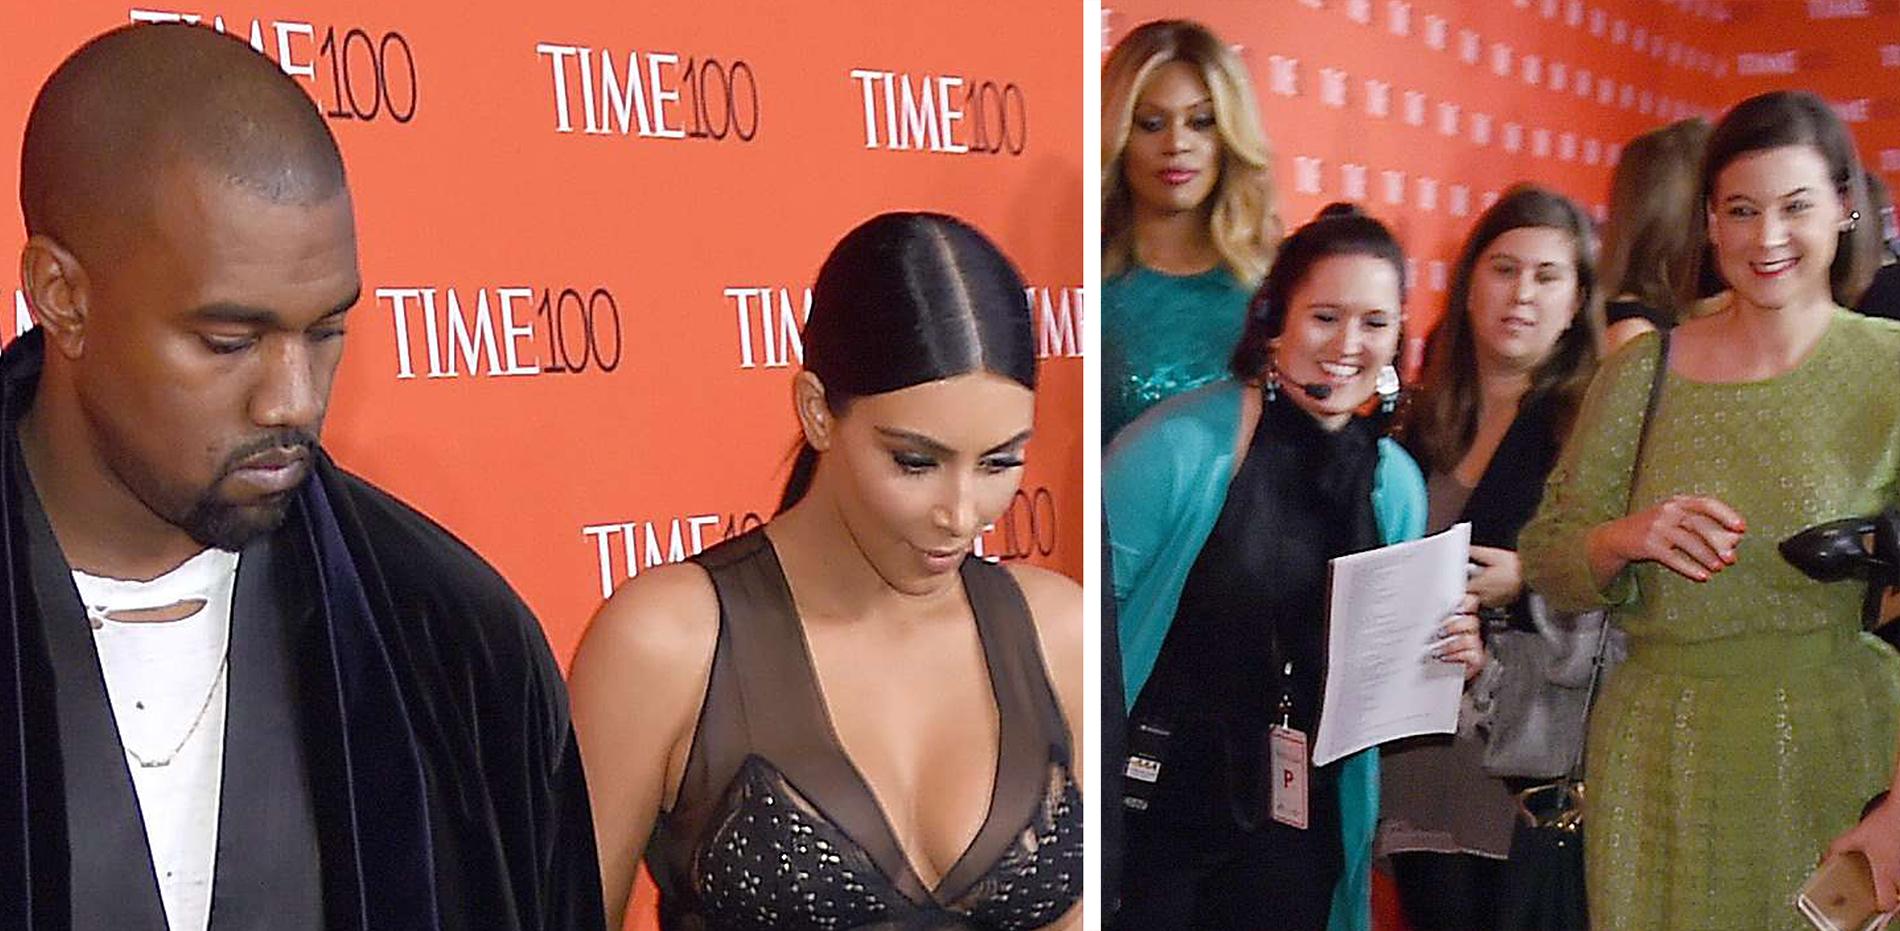 Det uppstod ett brett spektrum av reaktioner i lokalen, alltifrån Kanye Wests "döda fisken!"-blick till Kim Kardashians förbryllade leende till spridda skratt bland de samlade gästerna. Kanye West skrattade inte. Inte, inte, inte alls.